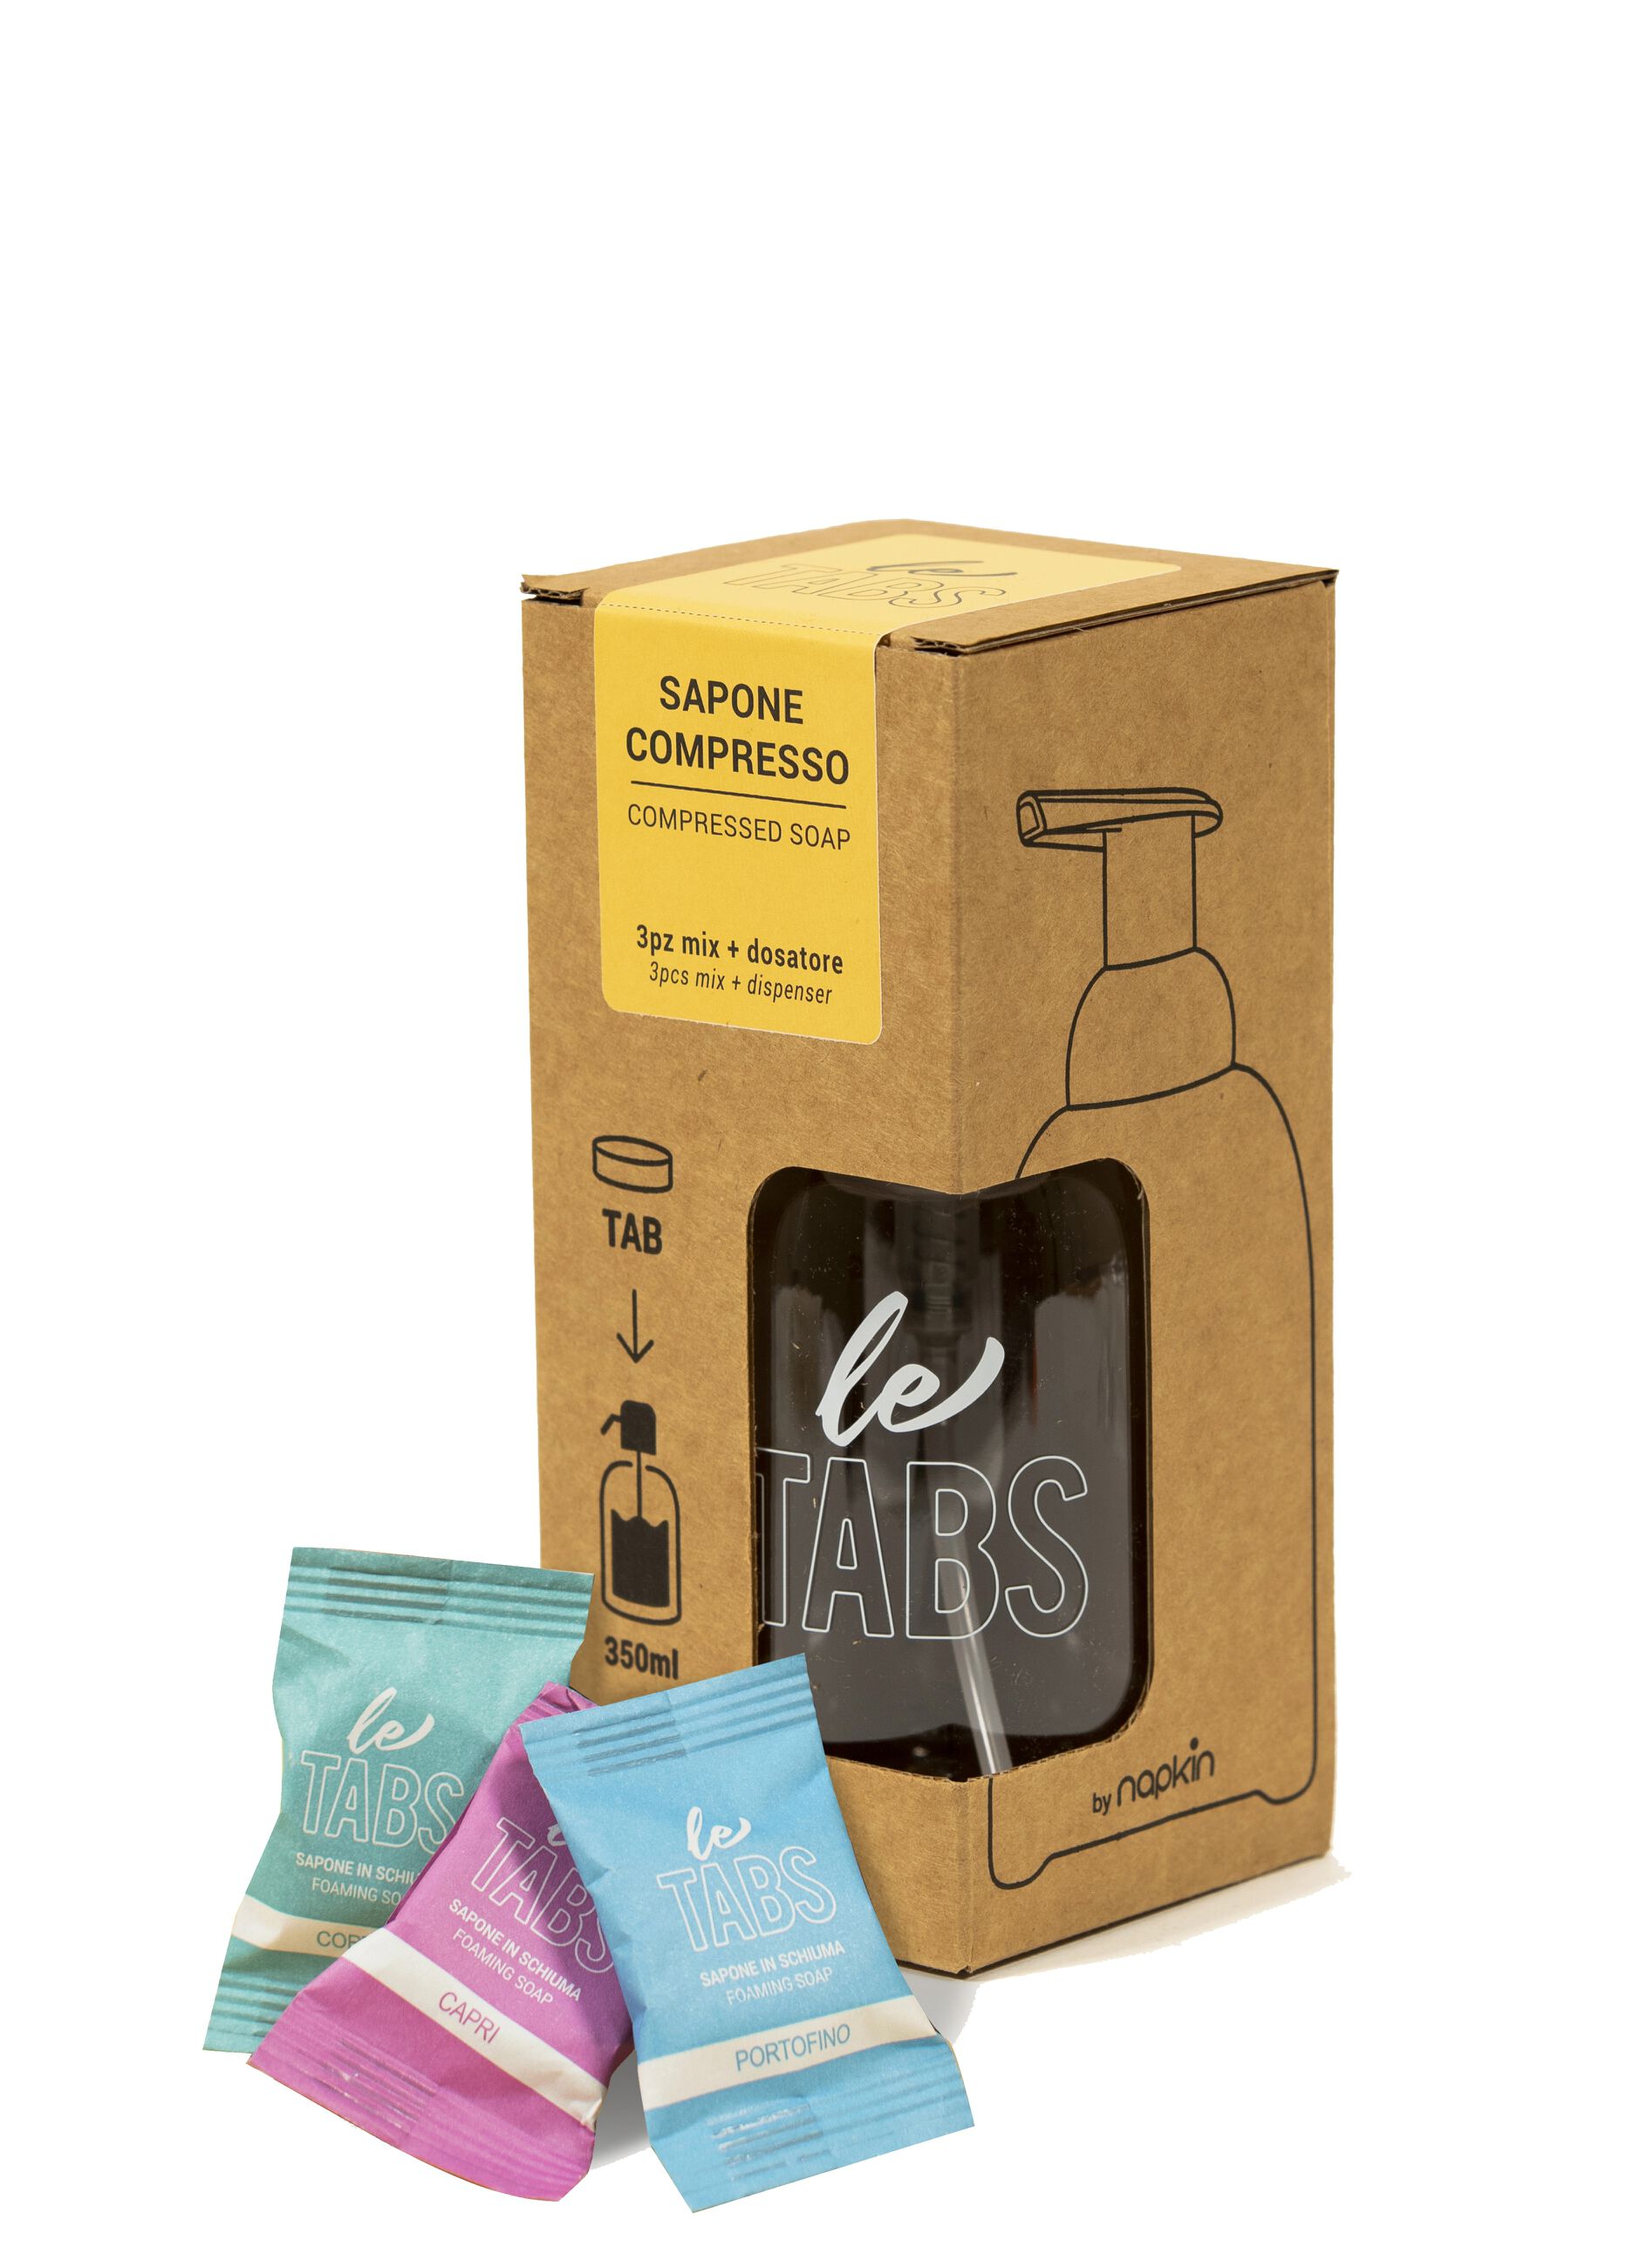 Soluble soap starter kit